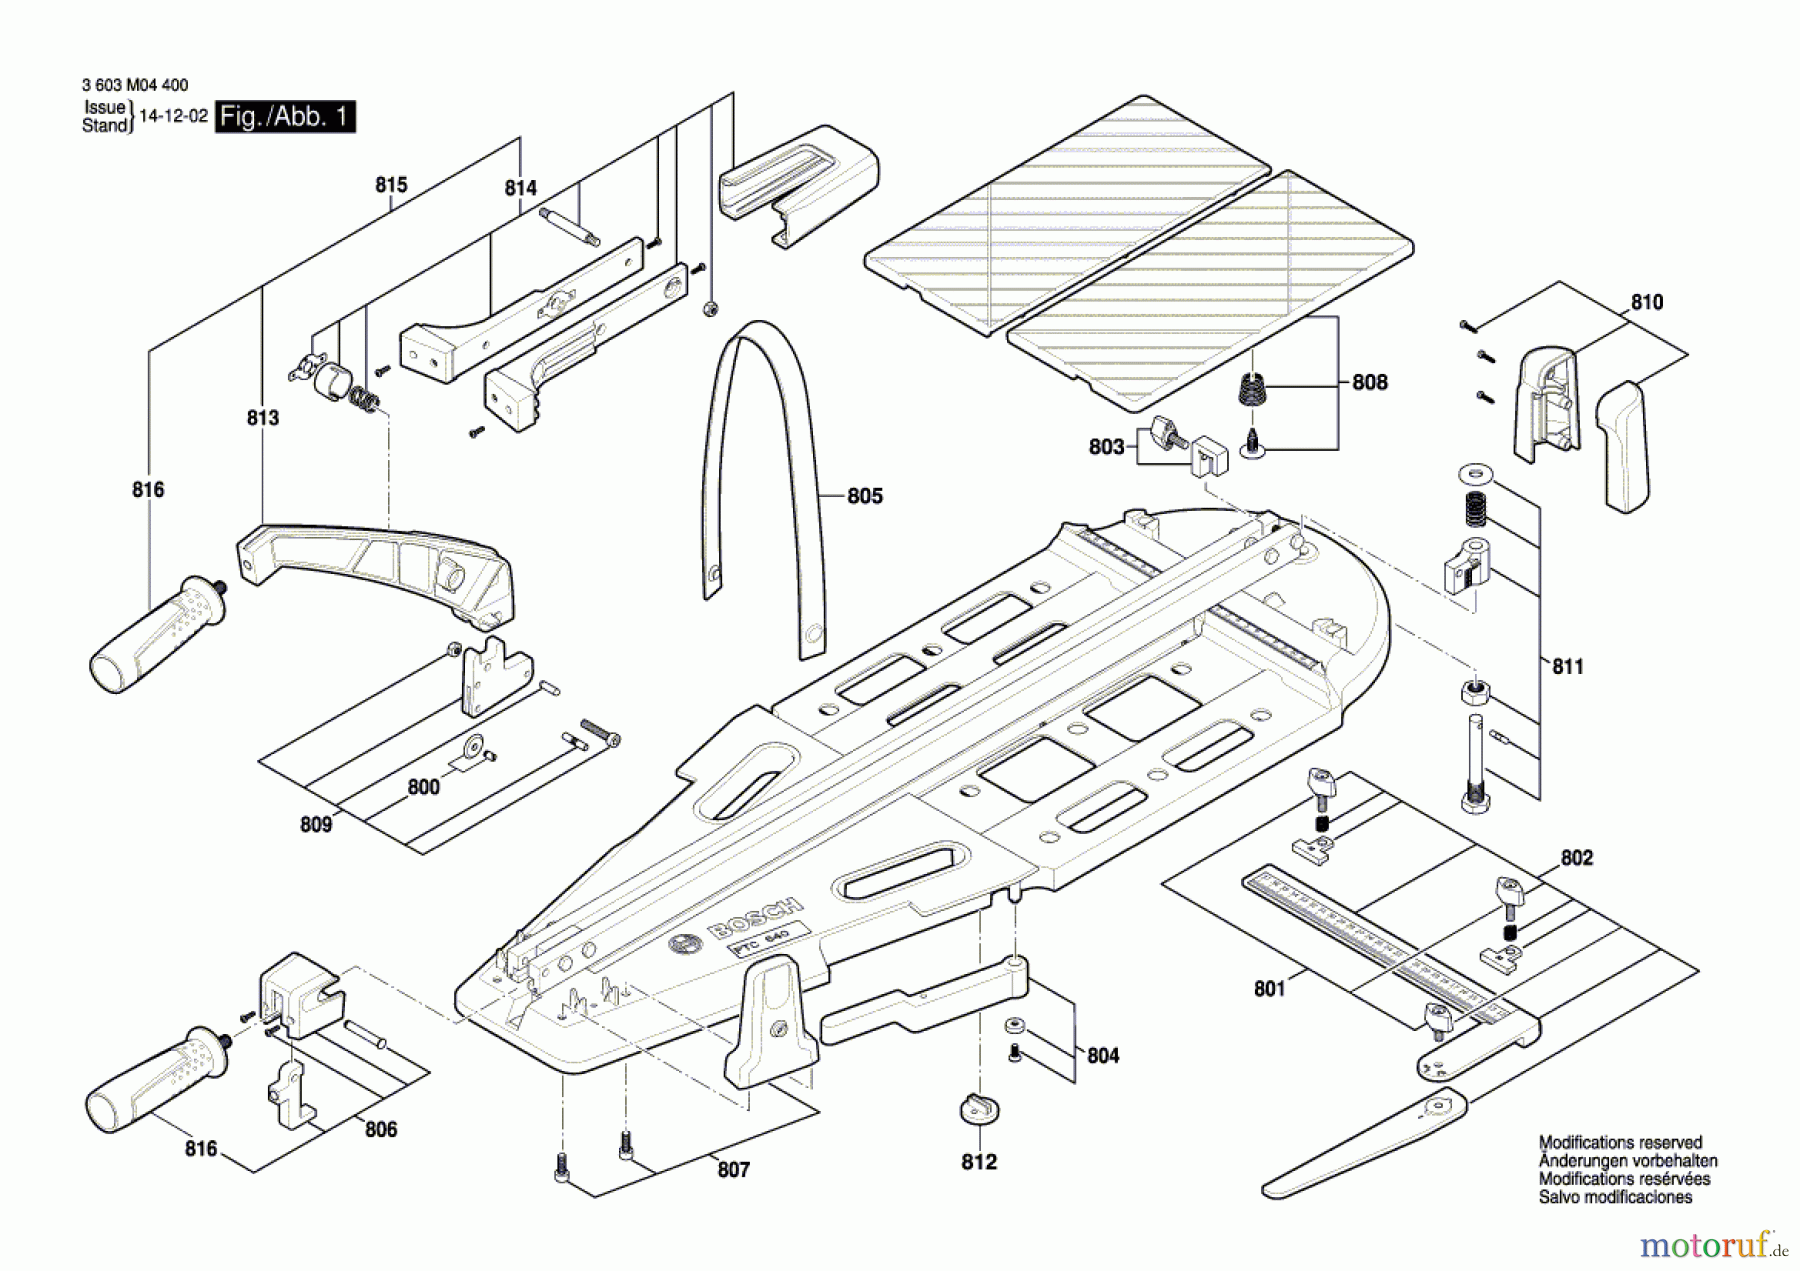  Bosch Werkzeug Fliesenschneider PTC 640 Seite 1